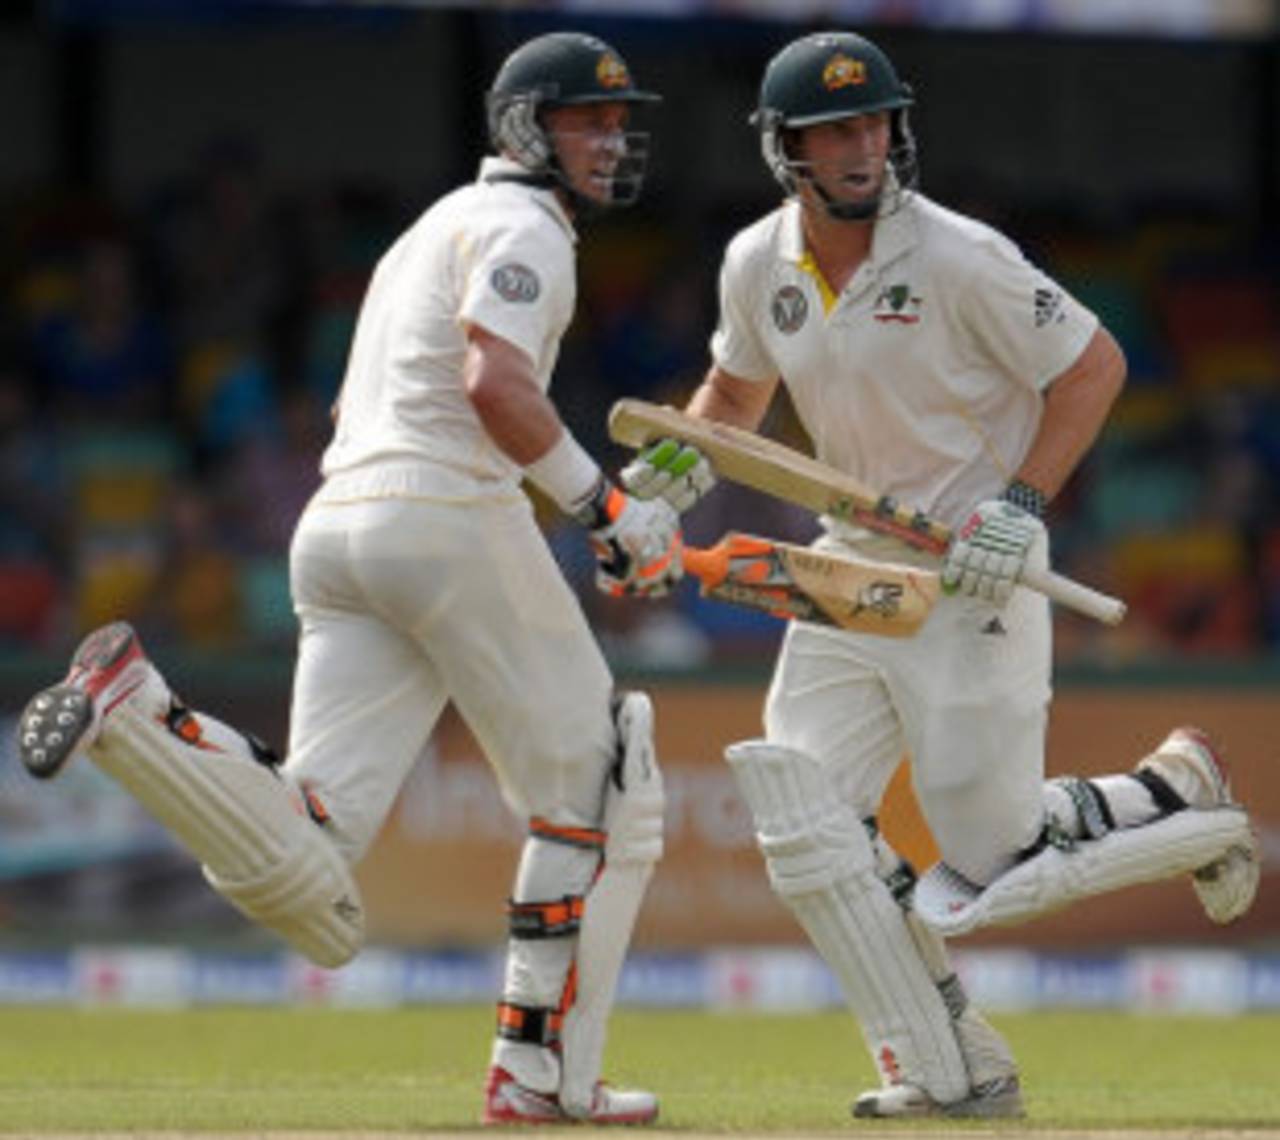 Michael Hussey and Shaun Marsh take a run, Sri Lanka v Australia, 3rd Test, SSC, Colombo, 1st day, September 16, 2011